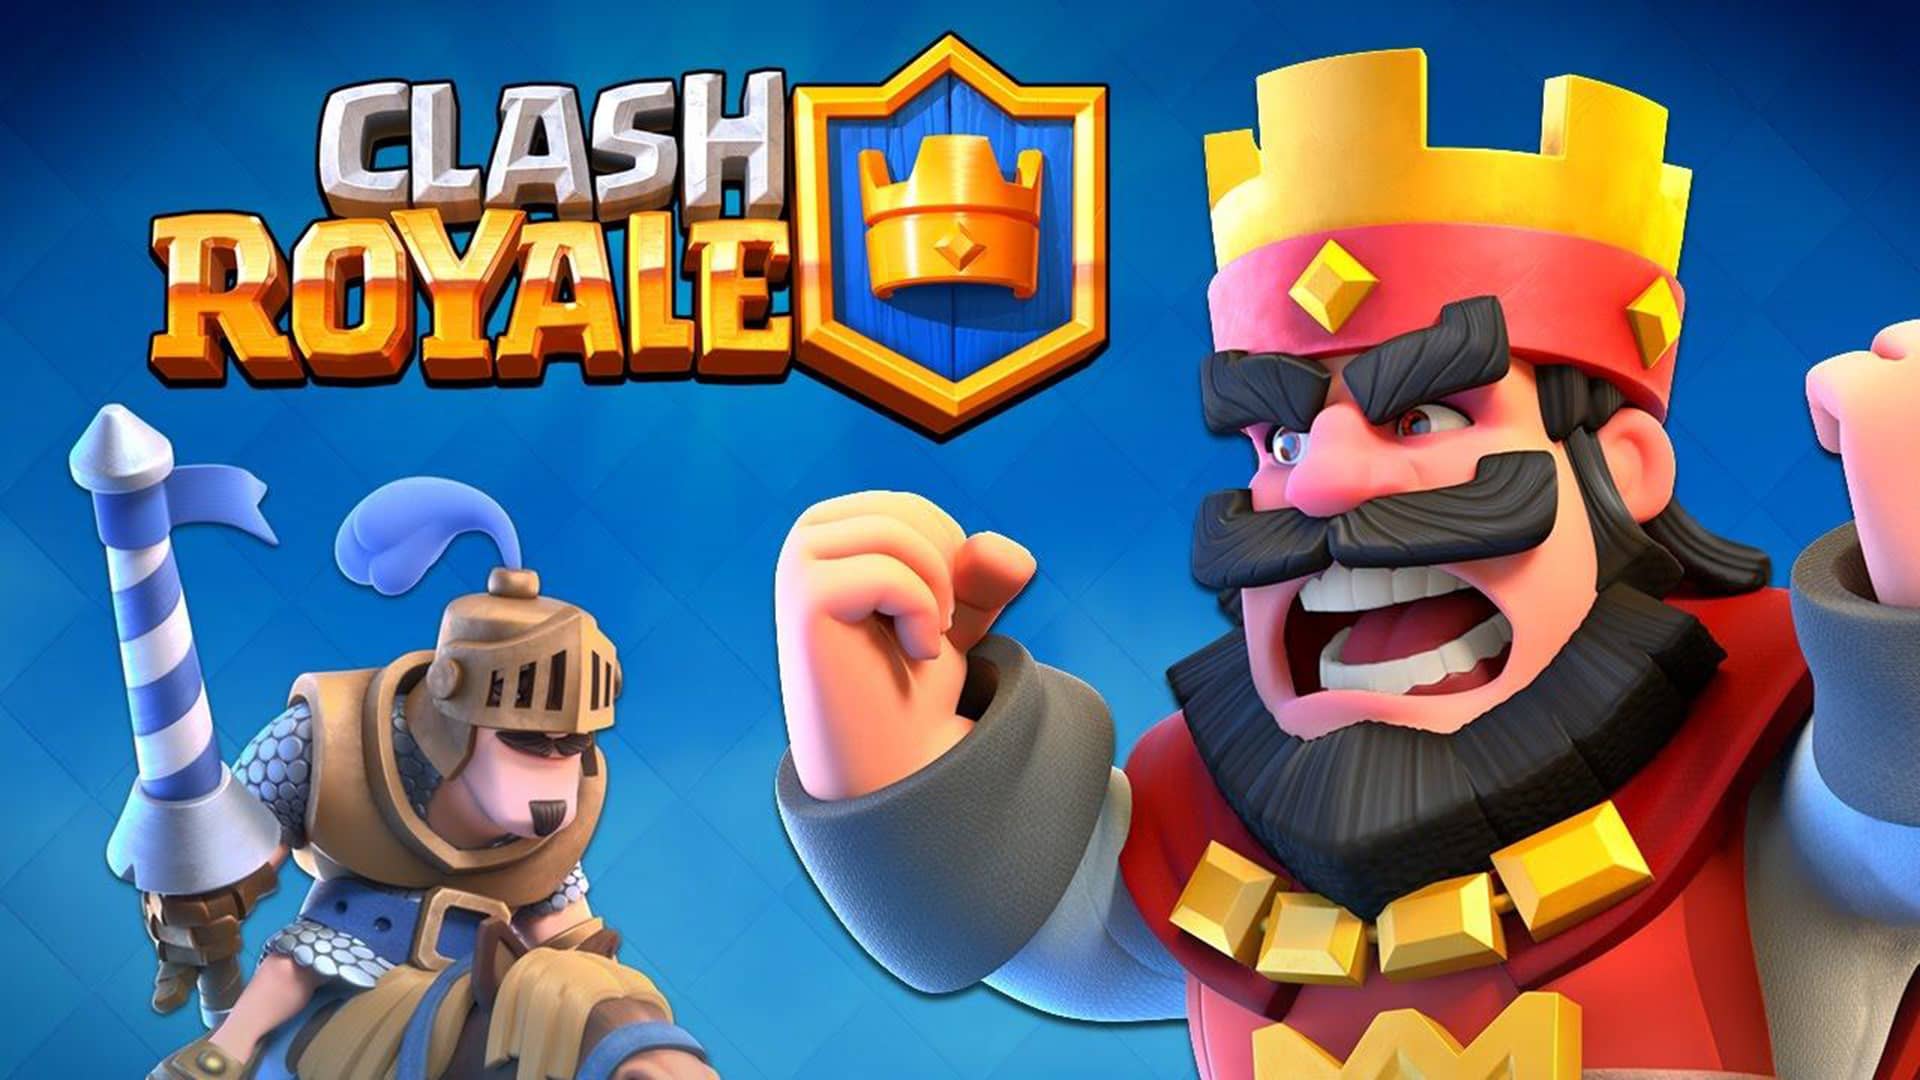 artwork del juego clash royale 